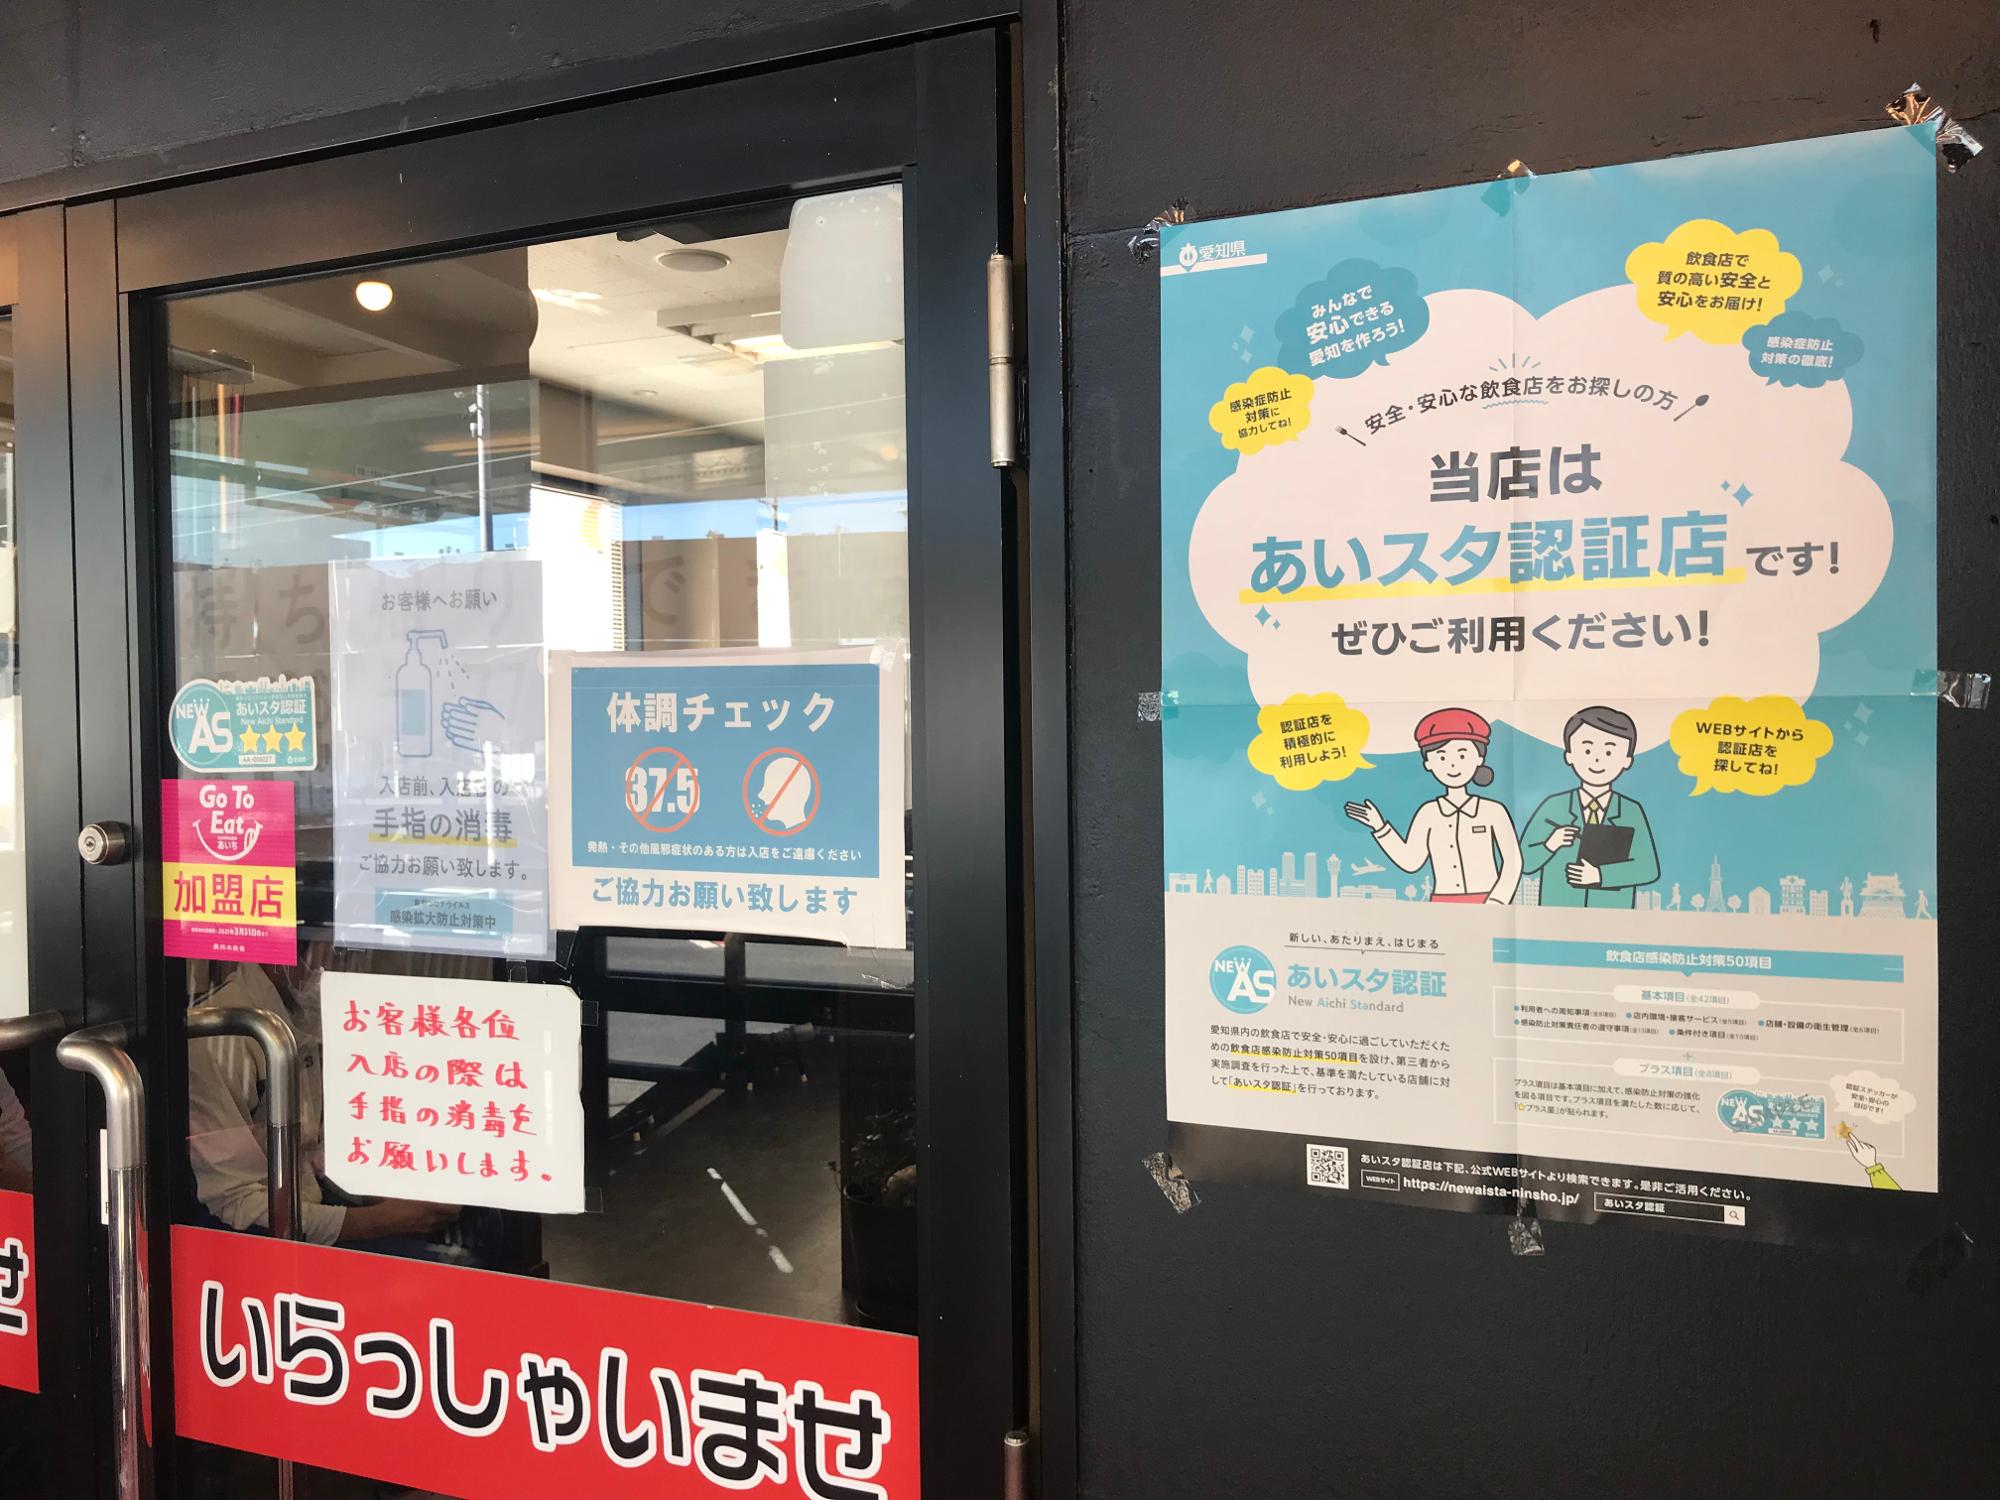 ※あいちスタンダード認証店=愛知県の飲食店向けのコロナ対策予防認証店